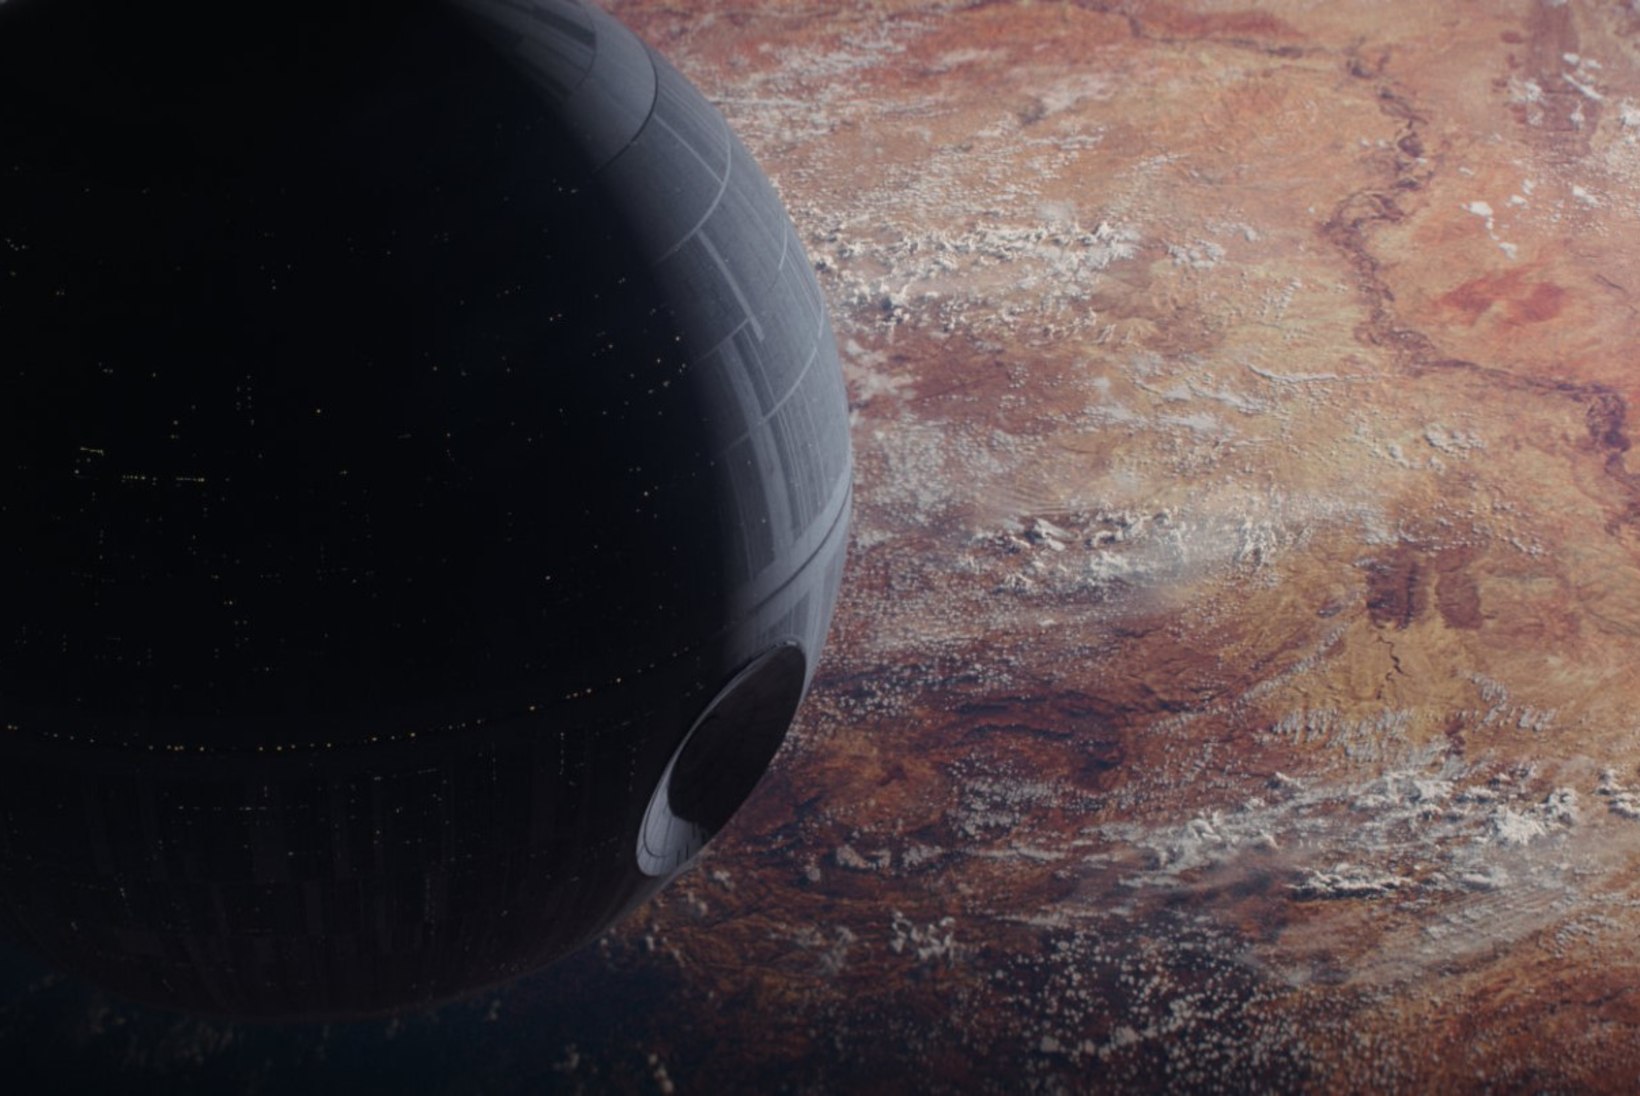 ARVUSTUS: "Rogue One" – siiani kõige kurvem "Star Warsi" film